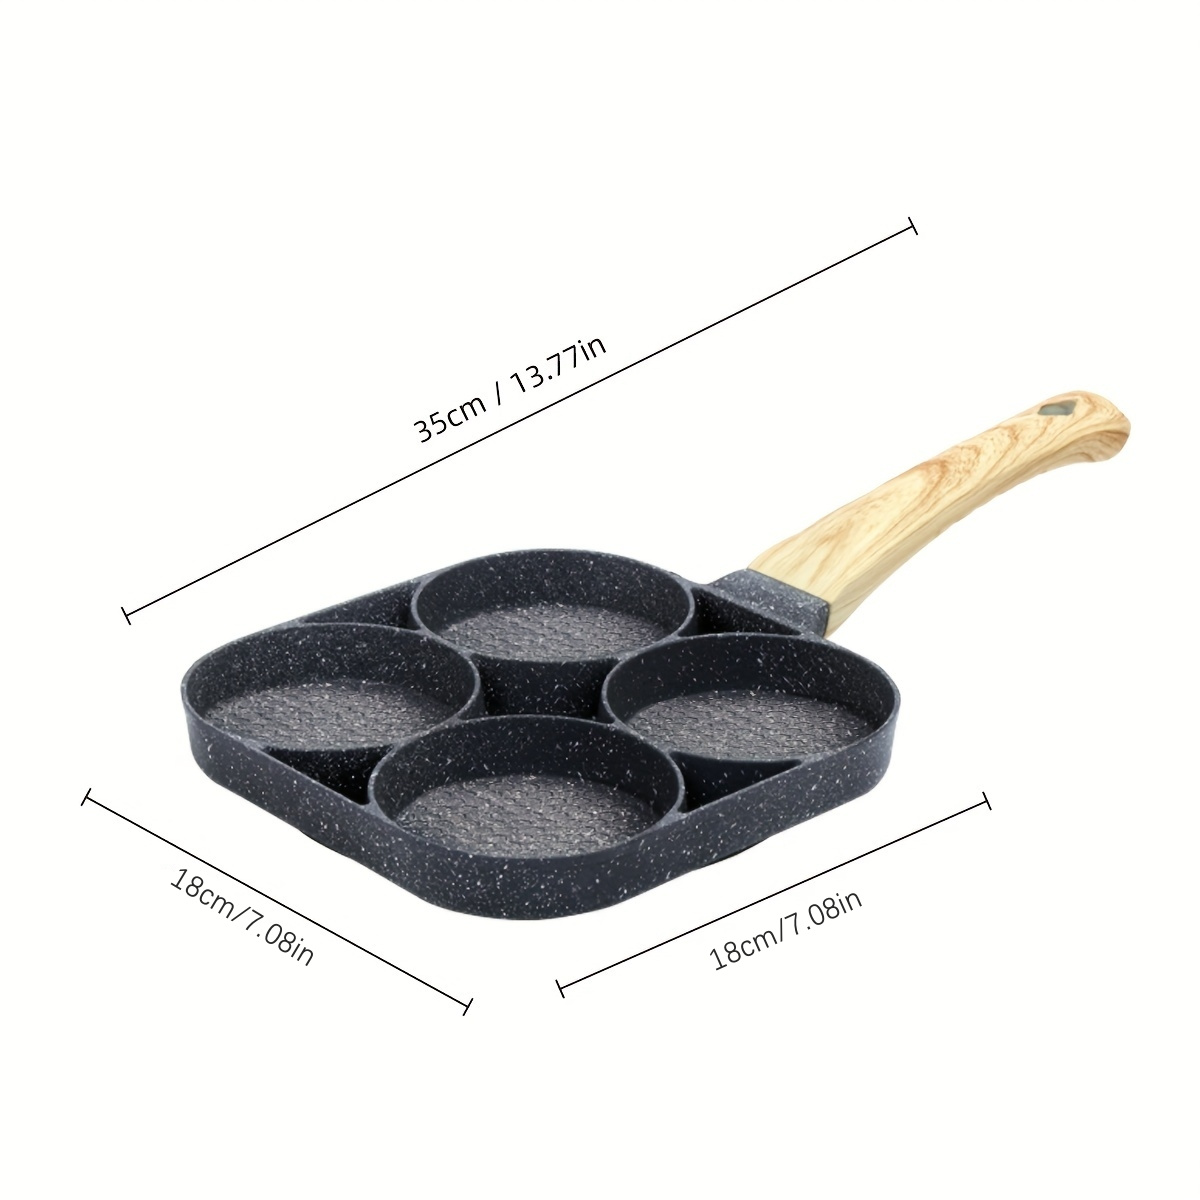 1Pc 4 Holes Egg Pancake Pan Frying Nonstick Pans Skillet Pot Kitchen Tool